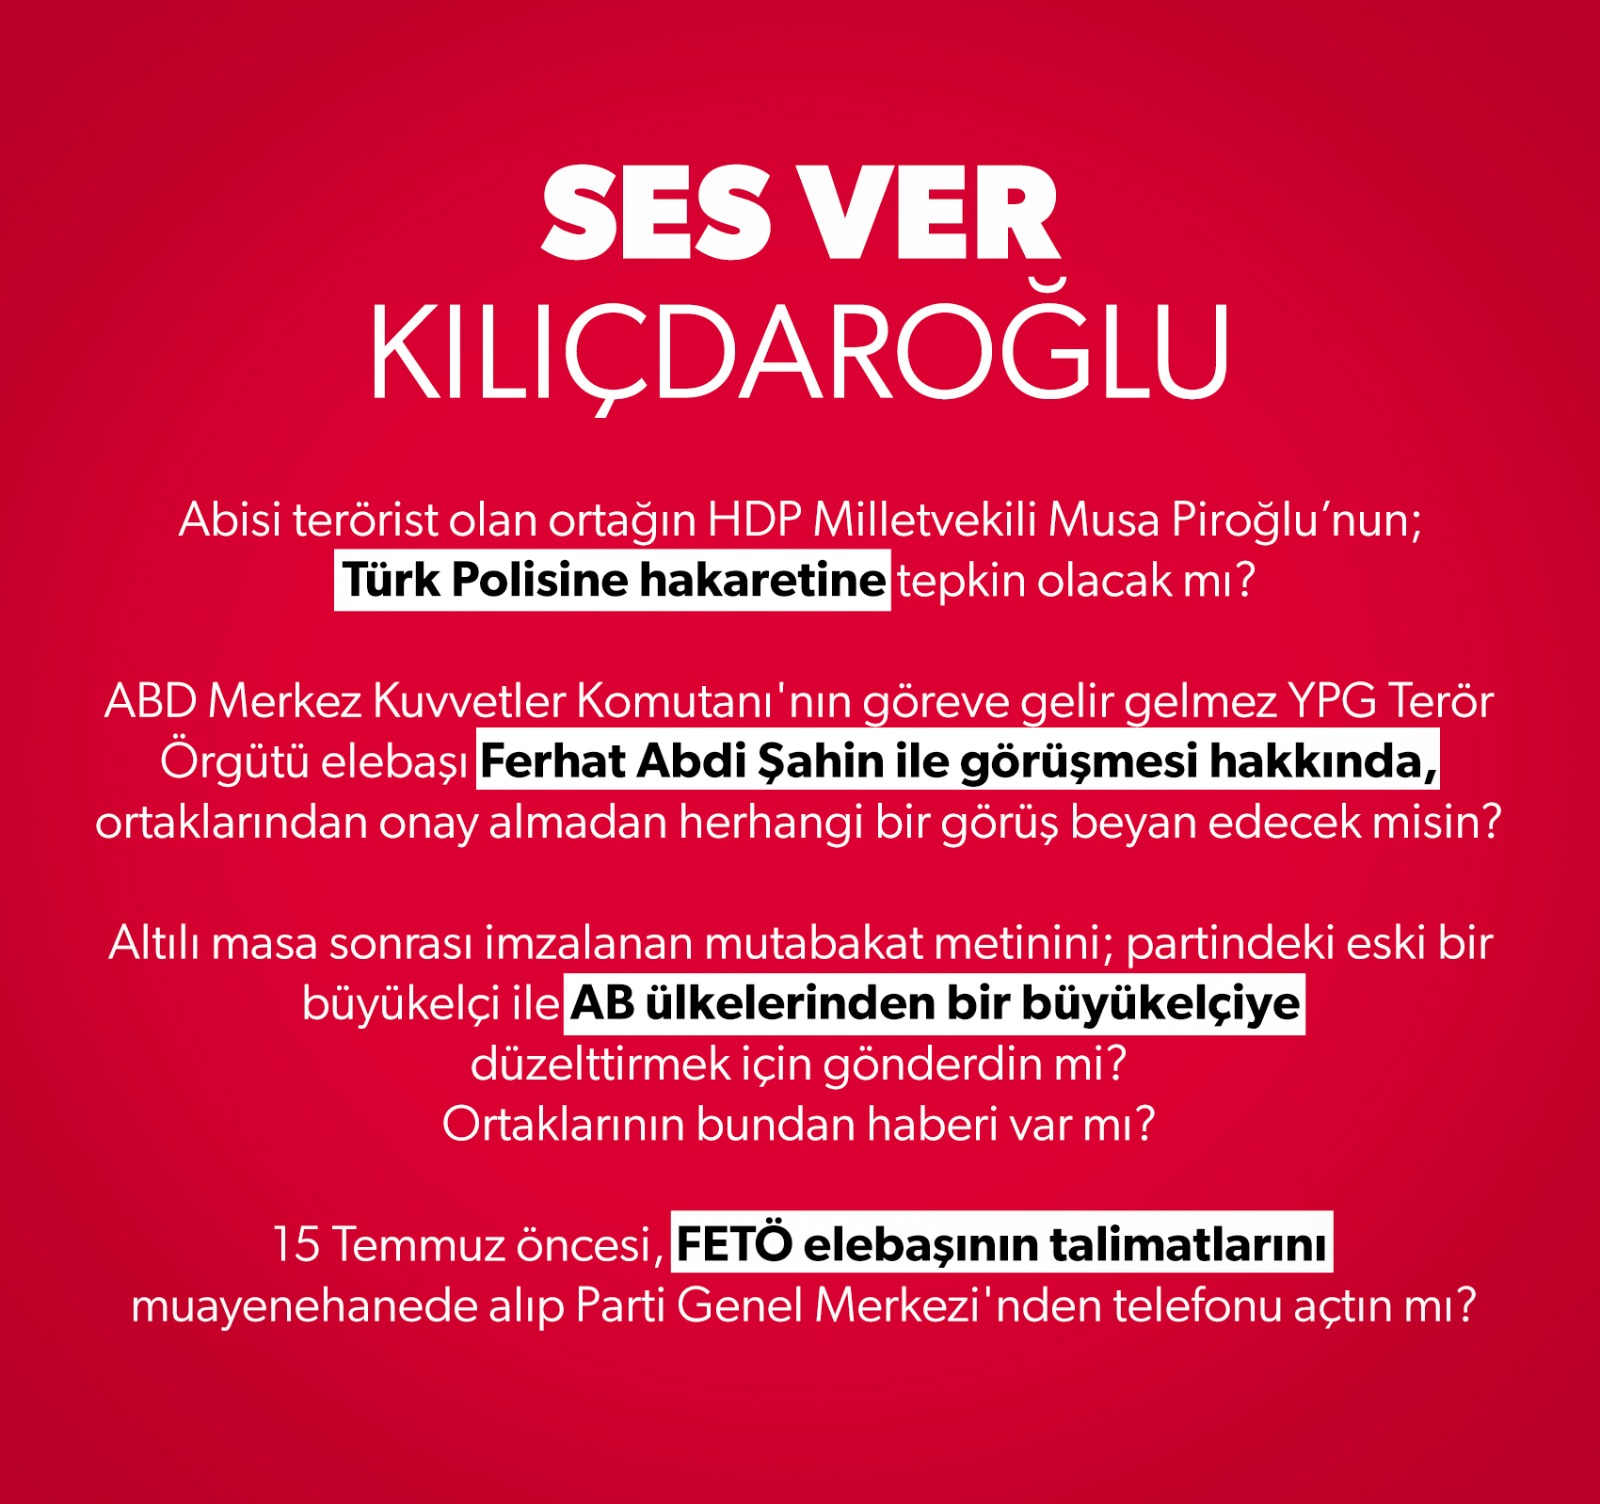 Ses ver Kılıçdaroğlu! CHP'nin ısrarla cevaplamadığı HDP, PKK ve FETÖ sorularını Bakan Soylu tekrar gündeme getirdi!